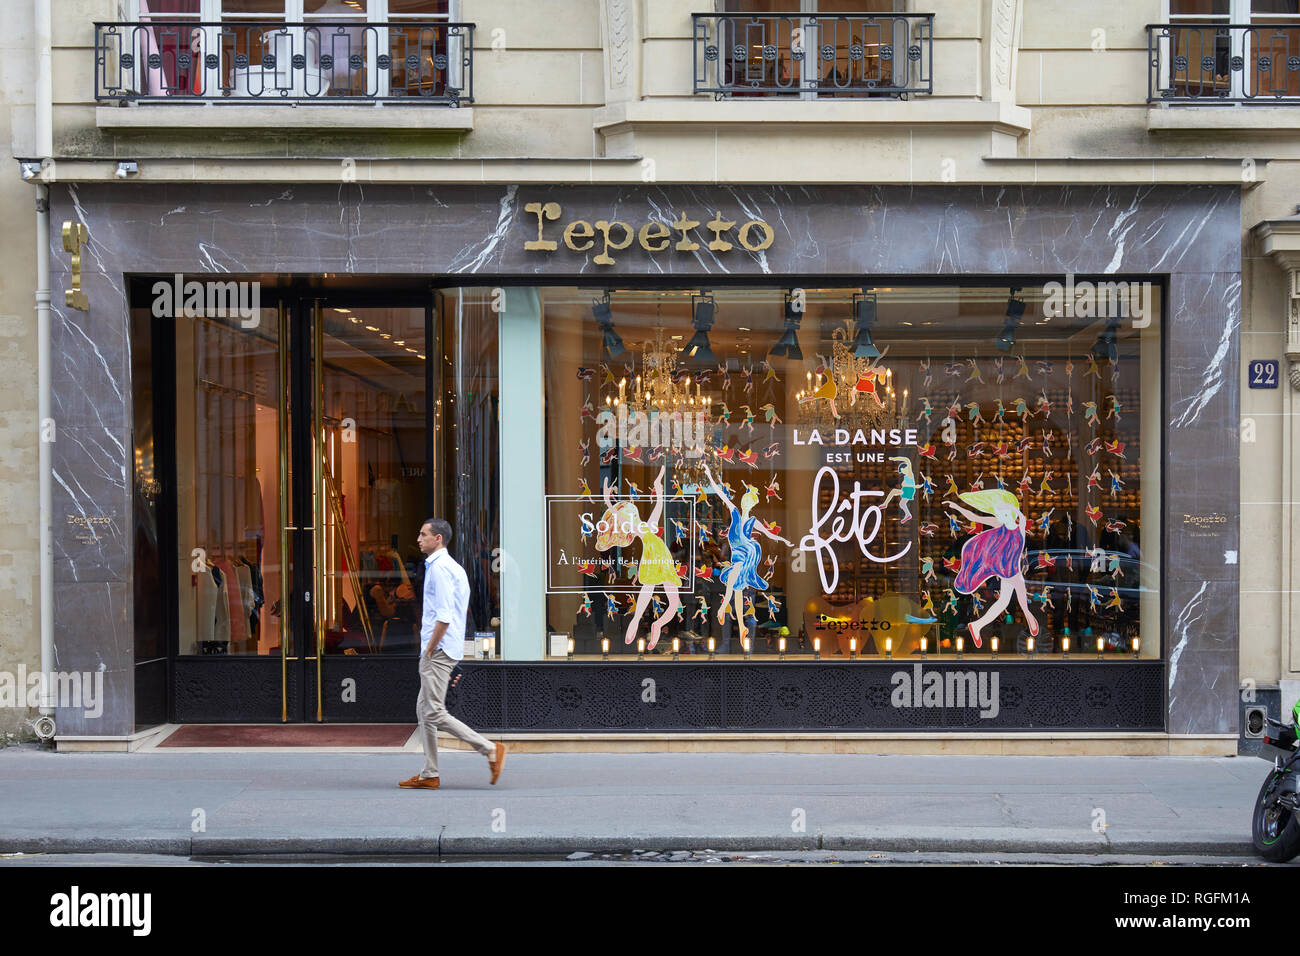 Parigi, Francia - Luglio 07, 2018: Repetto, danza e negozio di moda con lettere dorate firmano a Parigi e la facciata in marmo Foto Stock